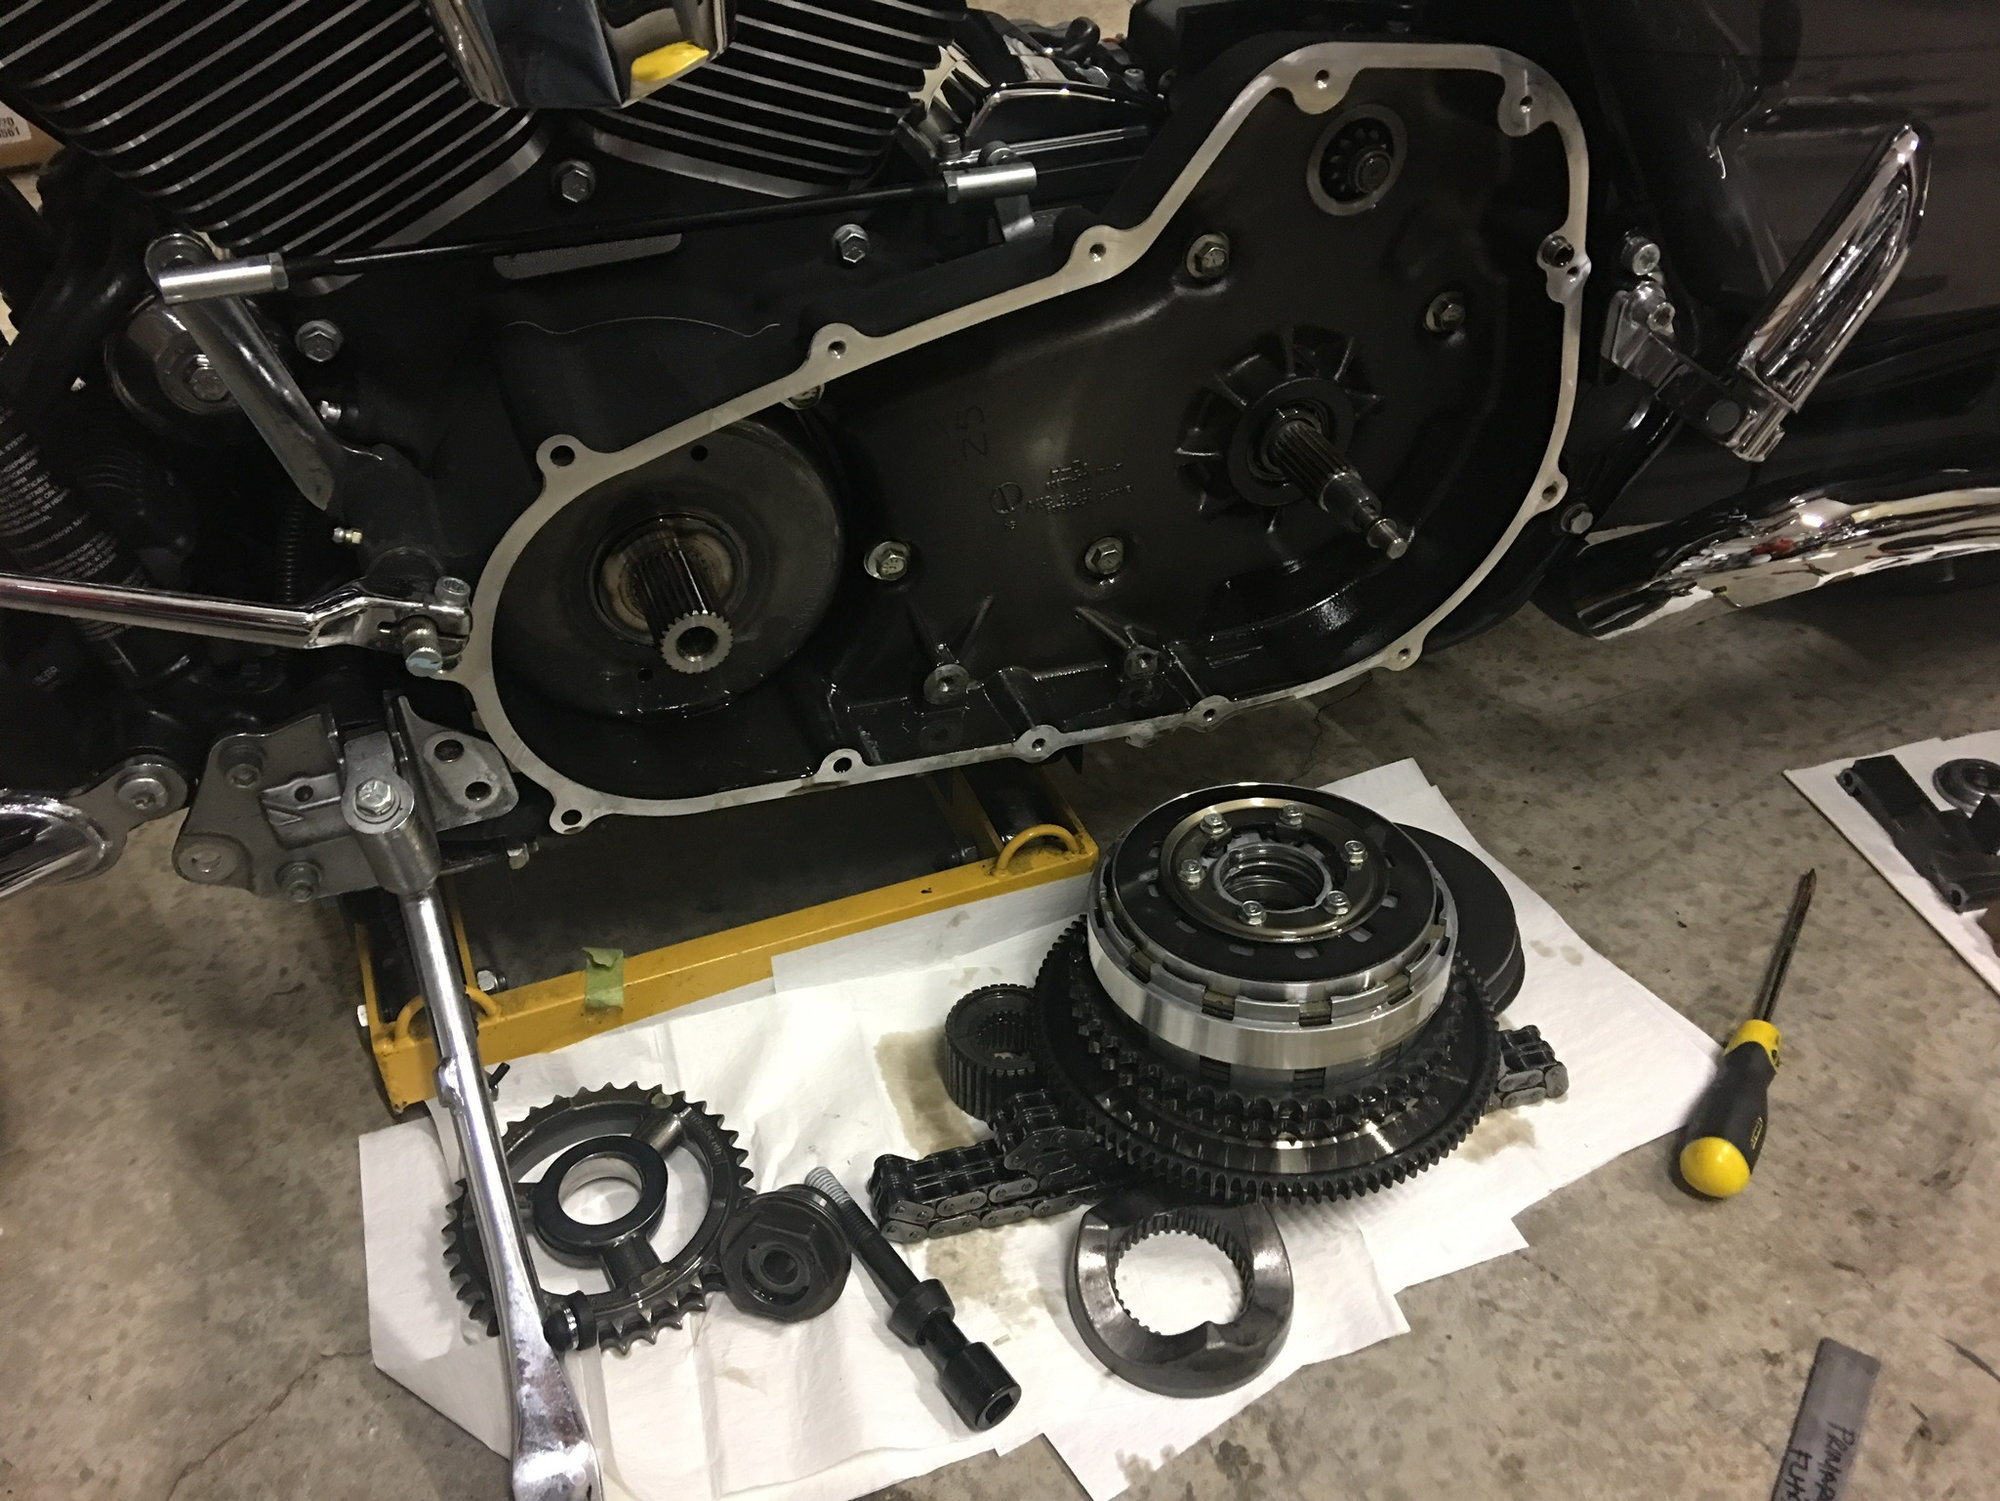 14 Sgs Compensator Eliminator Sprocket Install Harley Davidson Forums